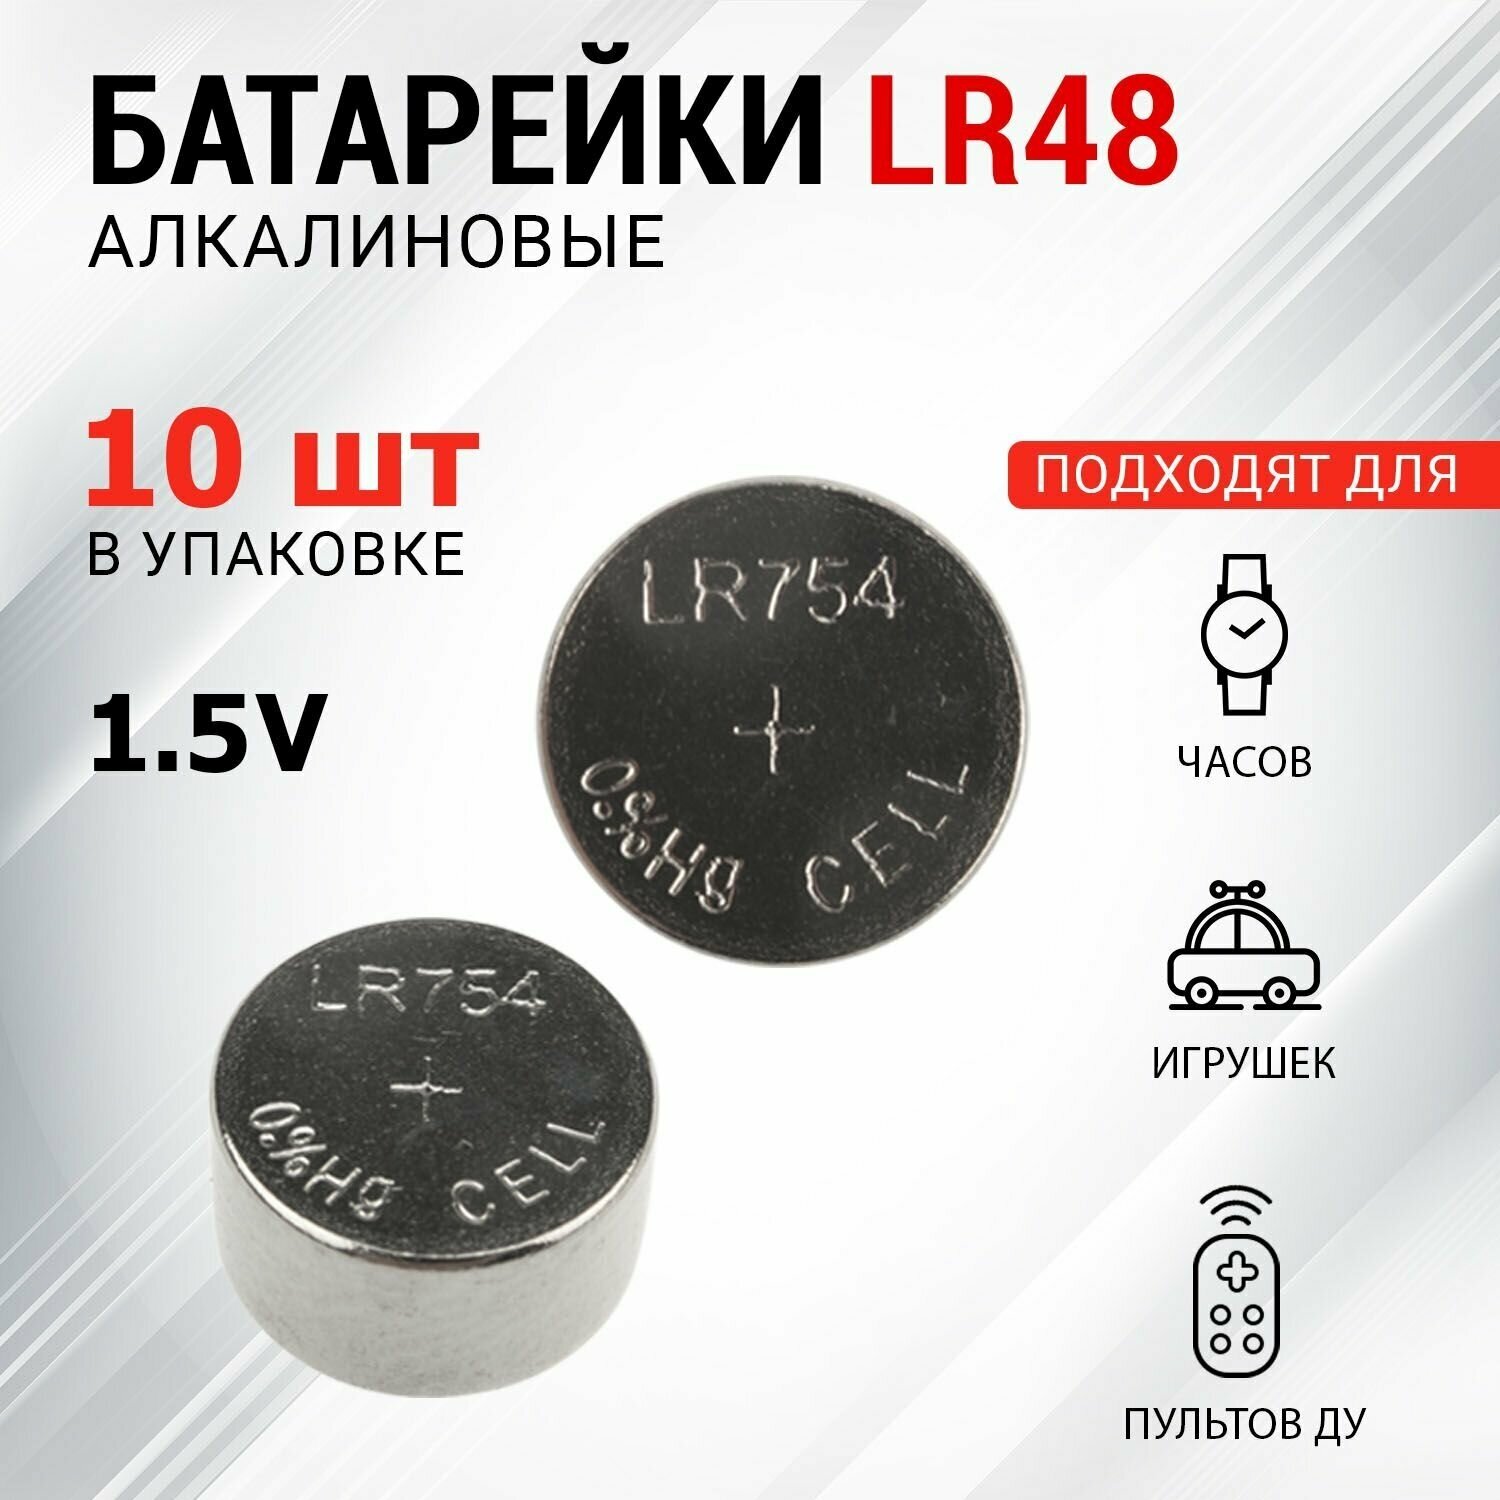 Батарейки REXANT типа LR48 (AG5, LR754, G5, 193, GP93A, 393, SR754W) 10 штук в упаковке